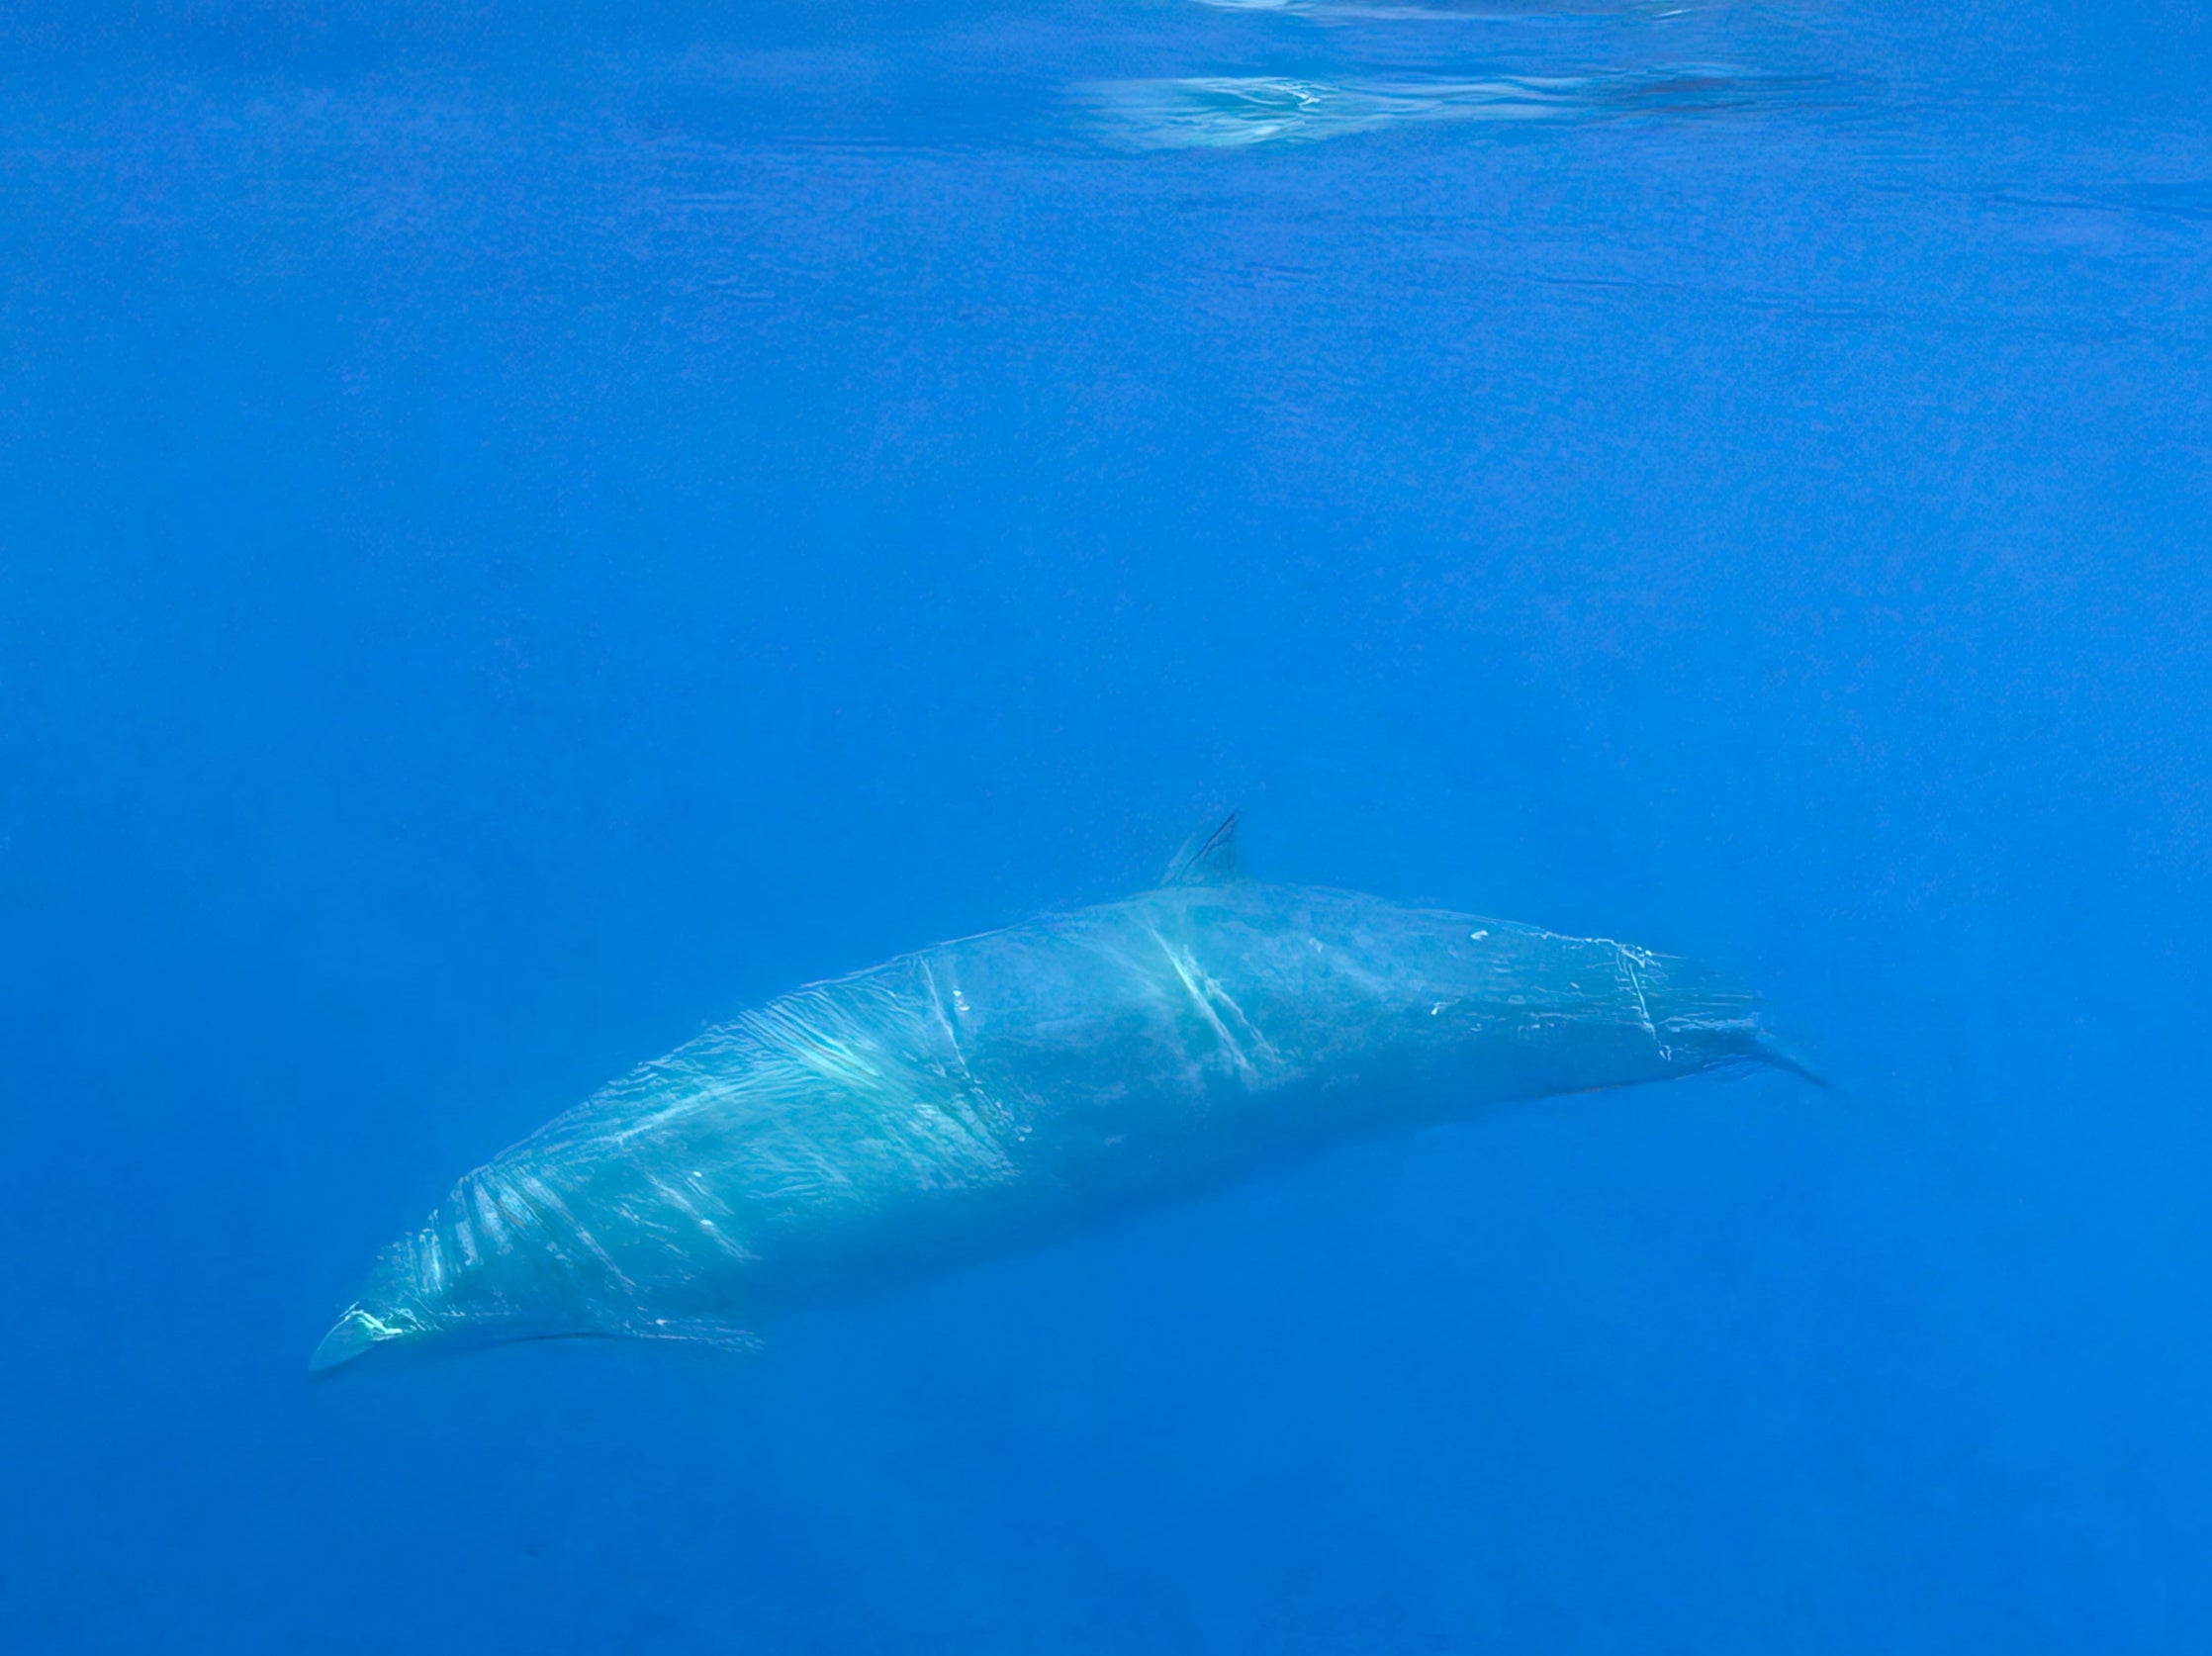 Los investigadores creen que han encontrado una especie de ballena picuda previamente desconocida en aguas de la costa occidental de México.